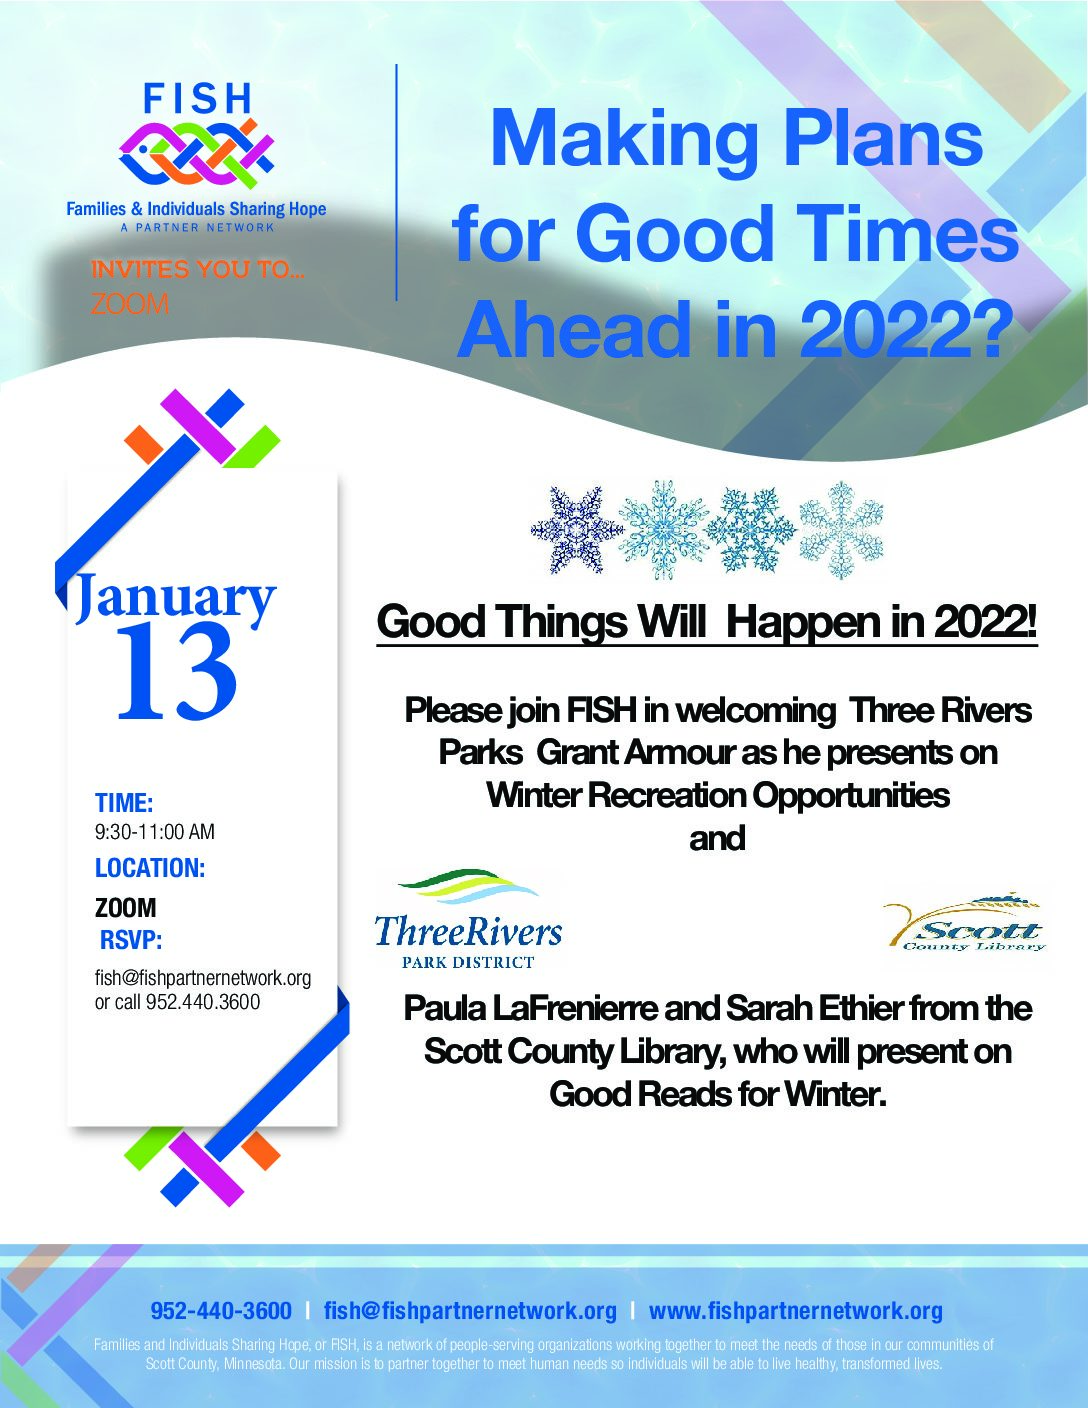 Winter Activities in 2022!